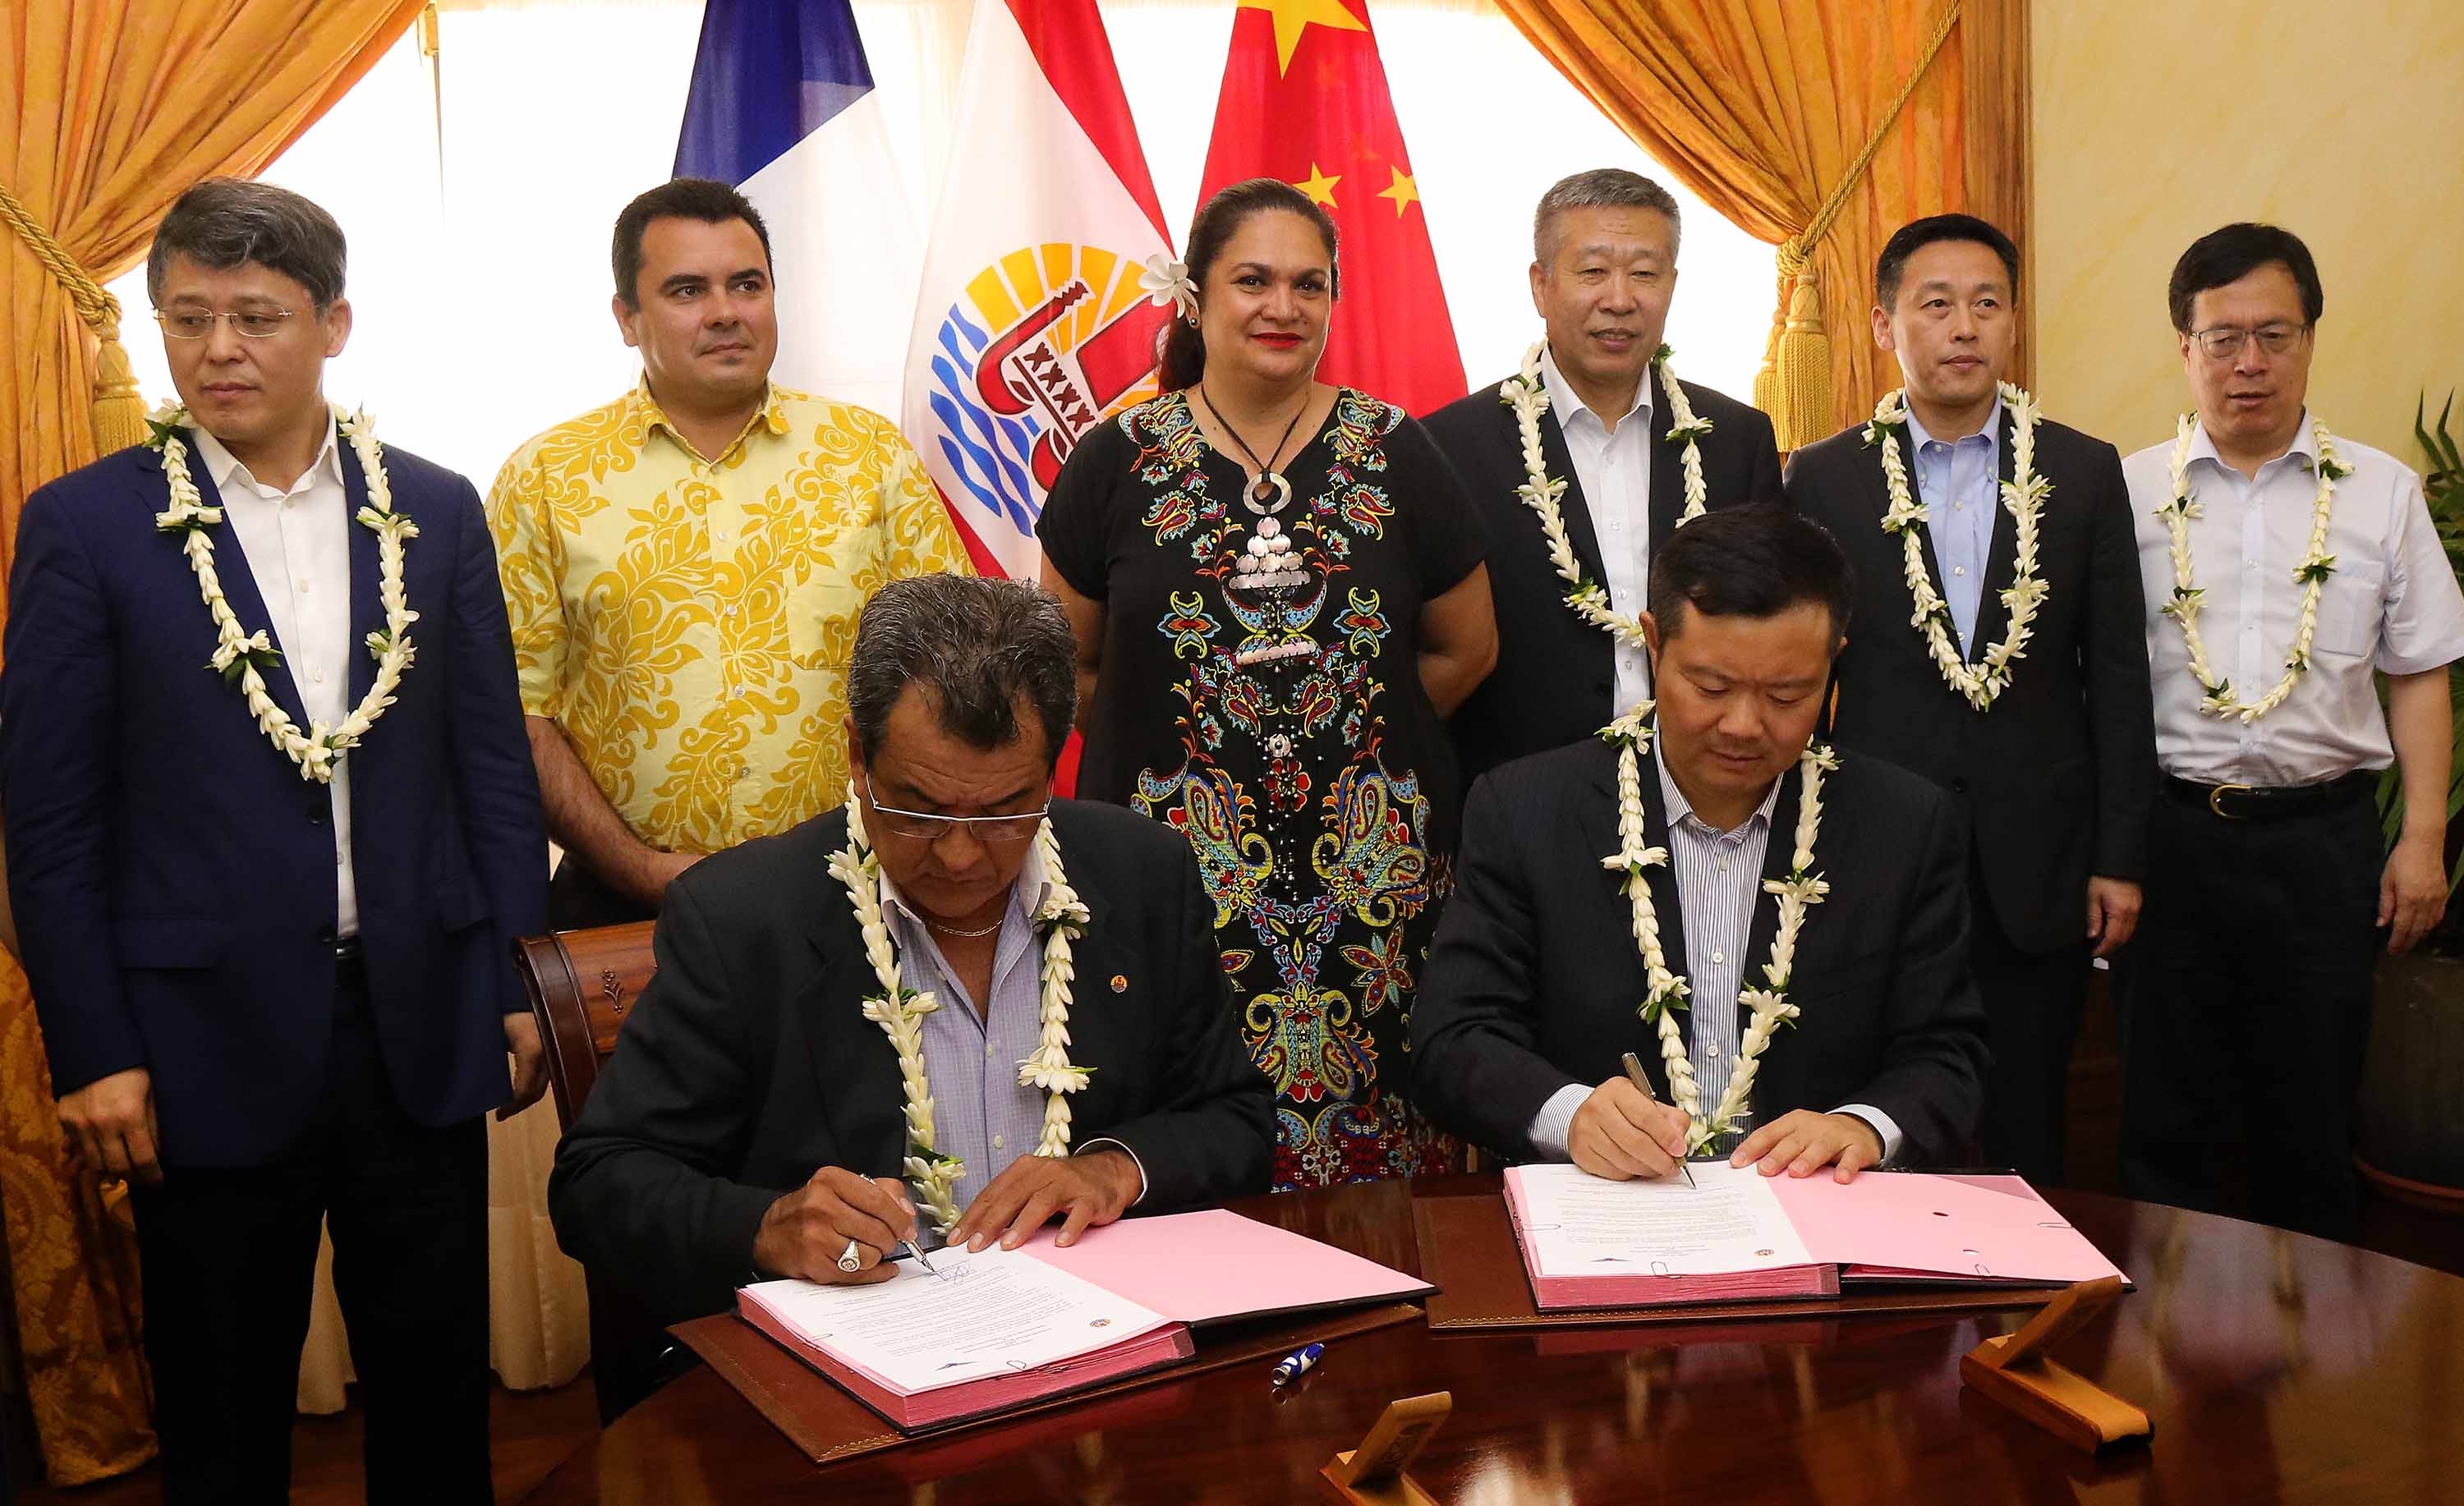 Une lettre d’intention entre le gouvernement de la Polynésie française et l’Administration de l’Aviation civile de Chine a été signée, celle-ci portant notamment sur le développement des échanges économiques et du tourisme entre la Polynésie française et la Chine.